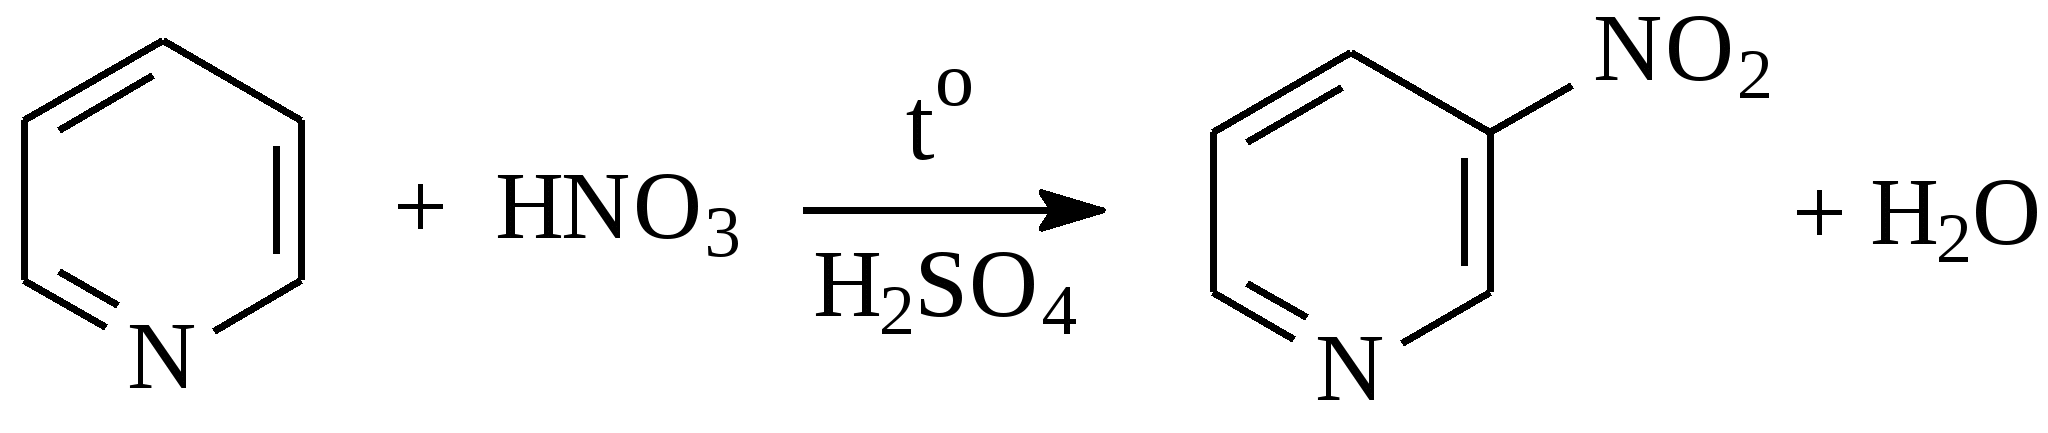 Hno2 схема